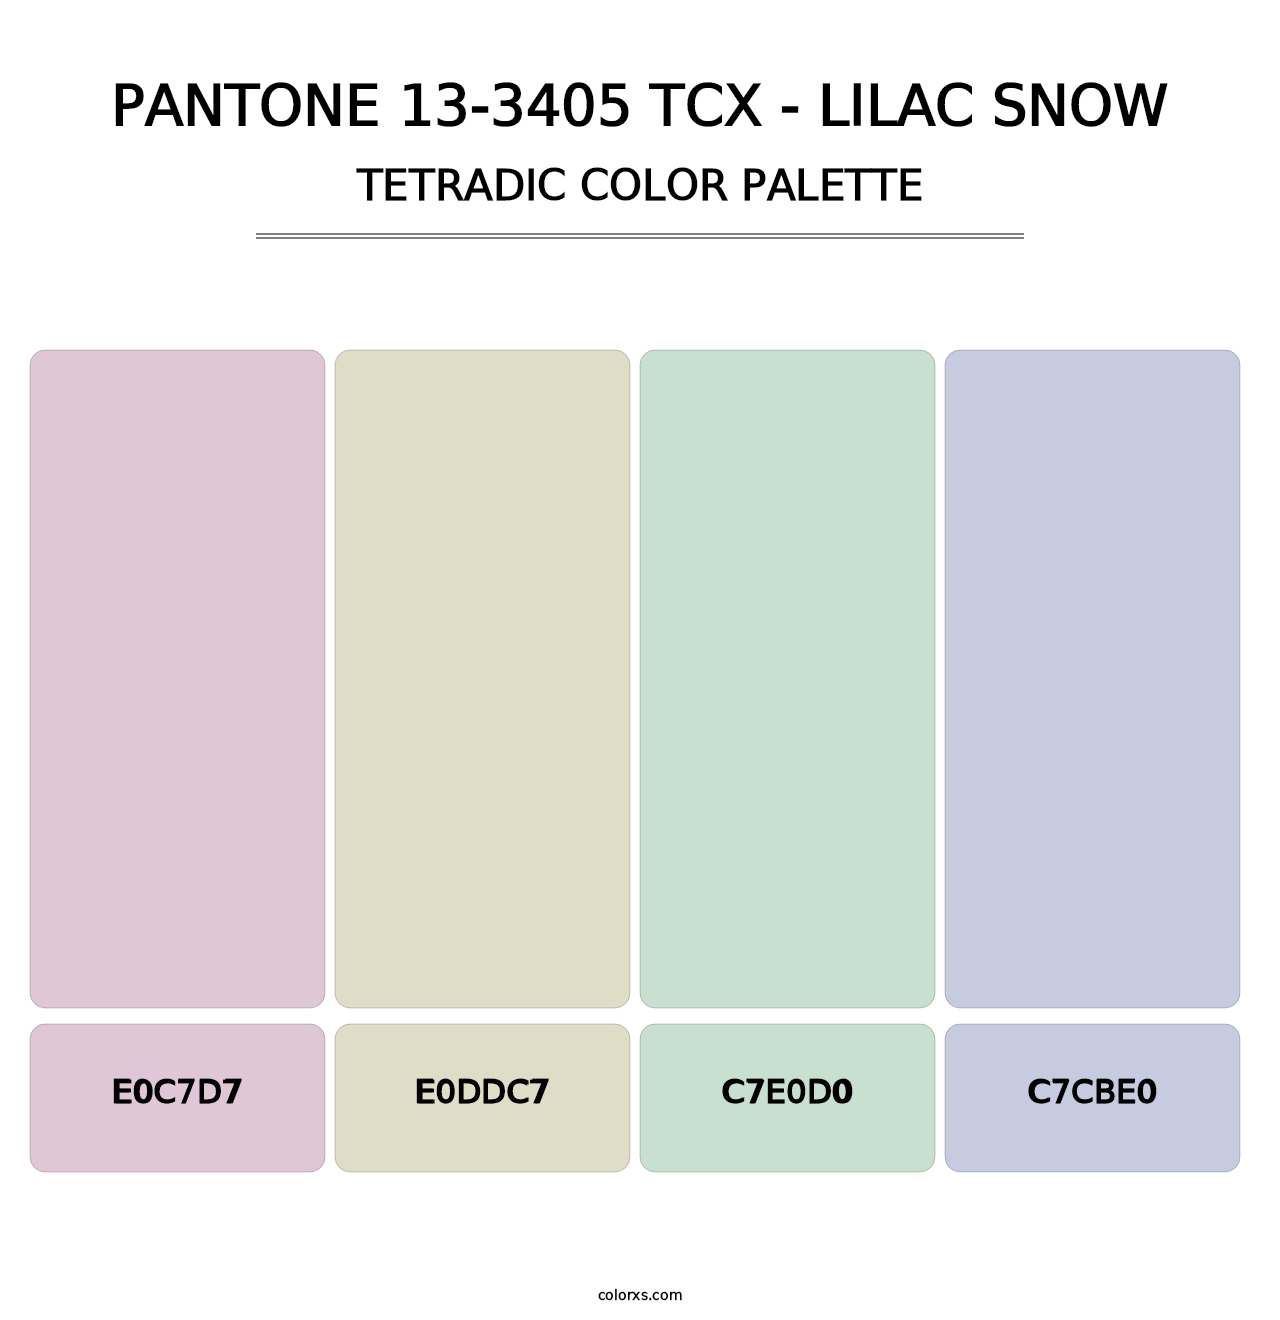 PANTONE 13-3405 TCX - Lilac Snow - Tetradic Color Palette